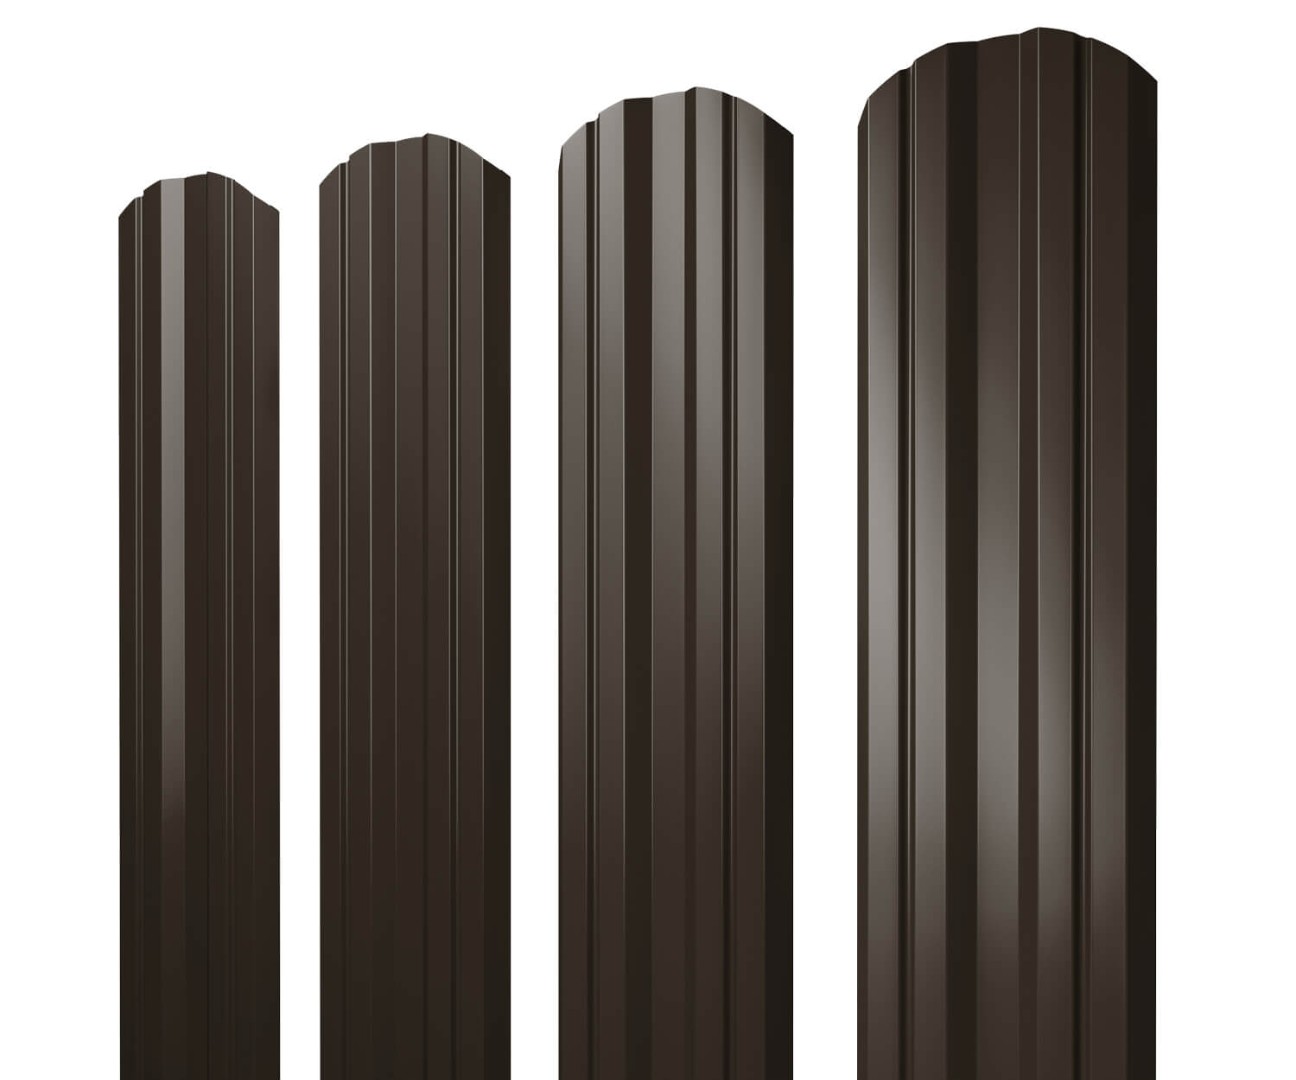 Штакетник Twin фигурный 0,5 Satin RR 32 темно-коричневый